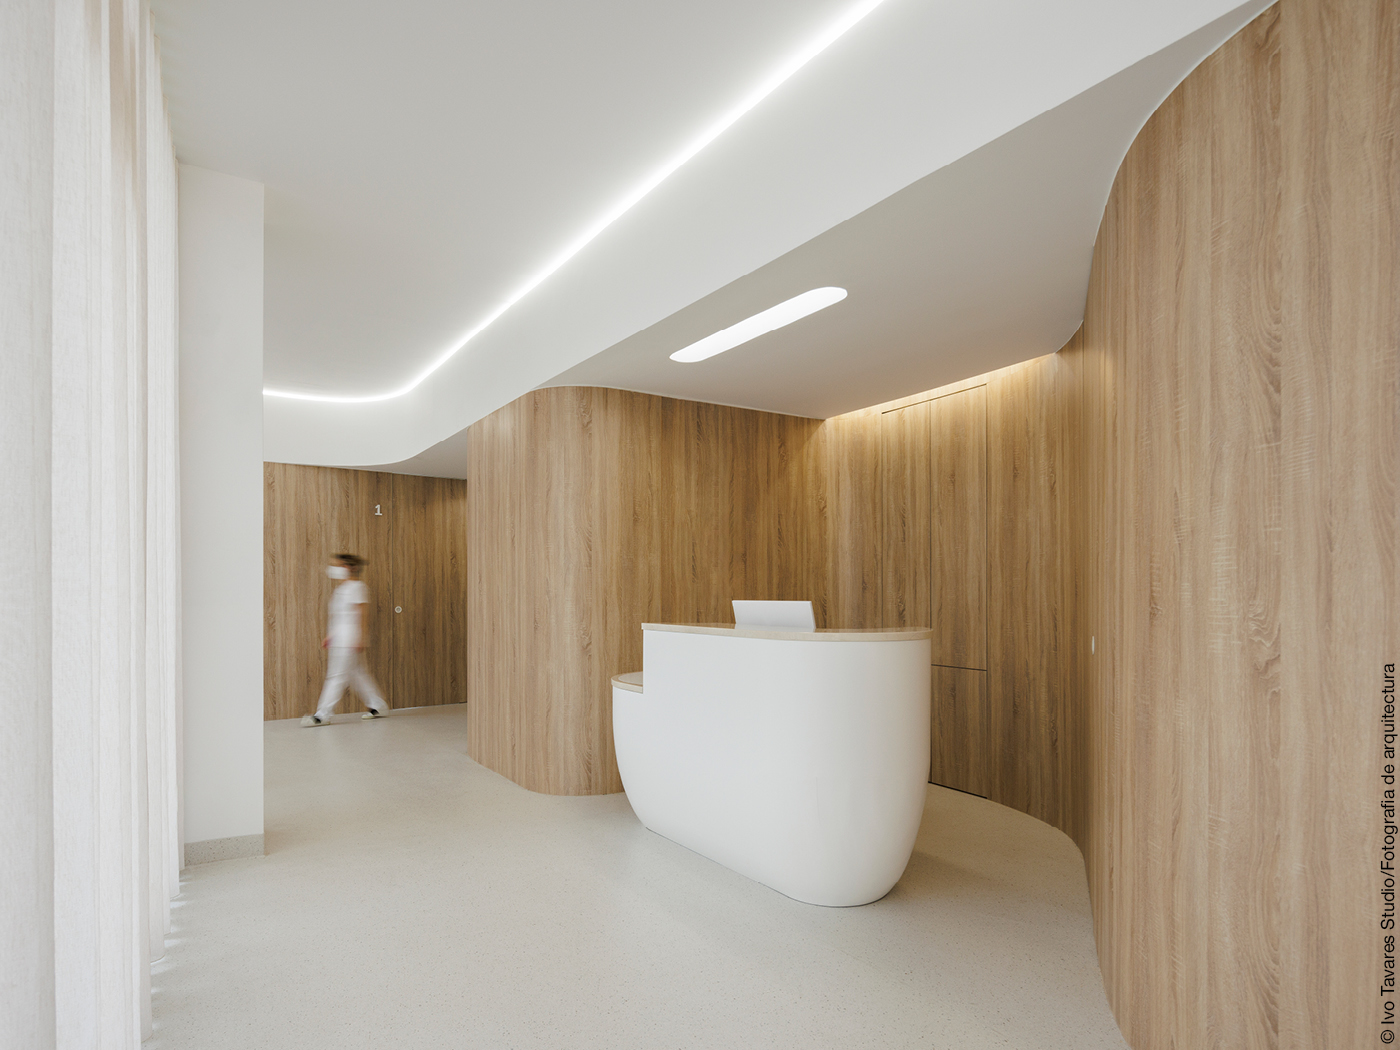 Eingangsbereich einer Zahnklinik mit Holzwänden und weißen Möbeln und weißem Boden.